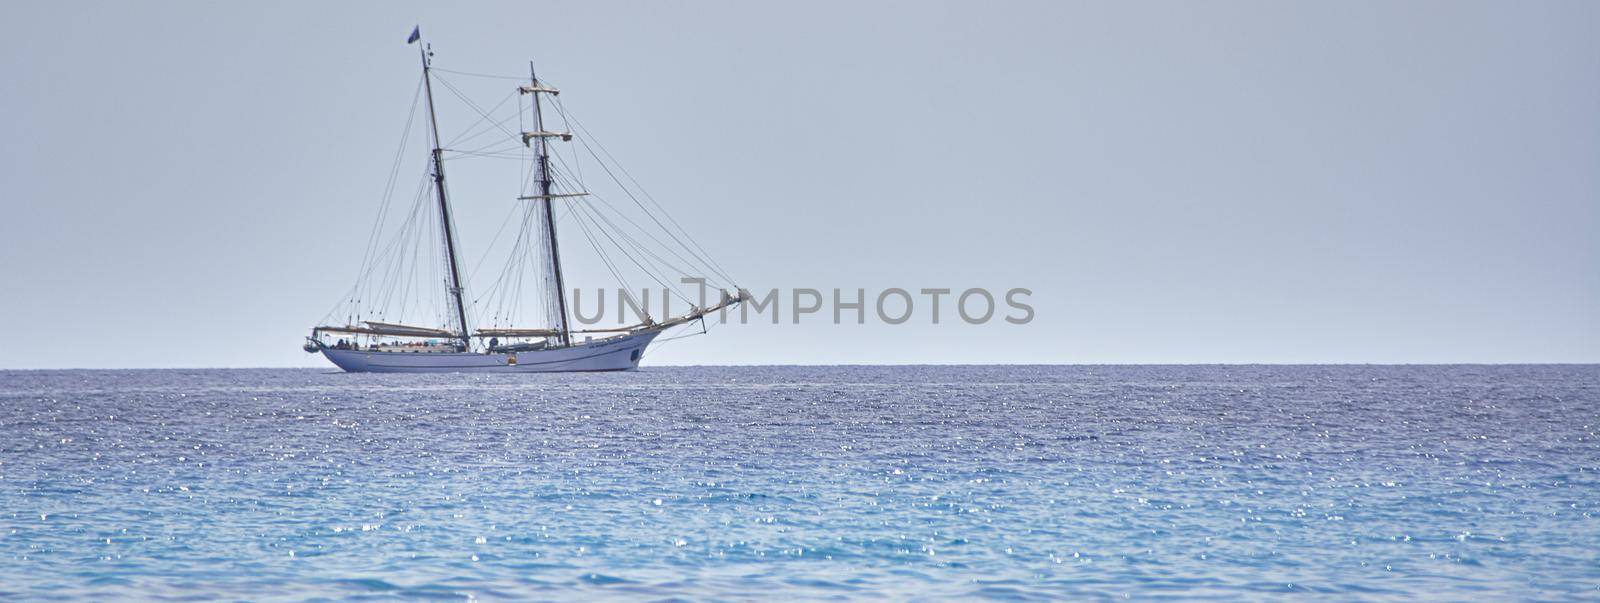 Sailing ship at sea by pippocarlot